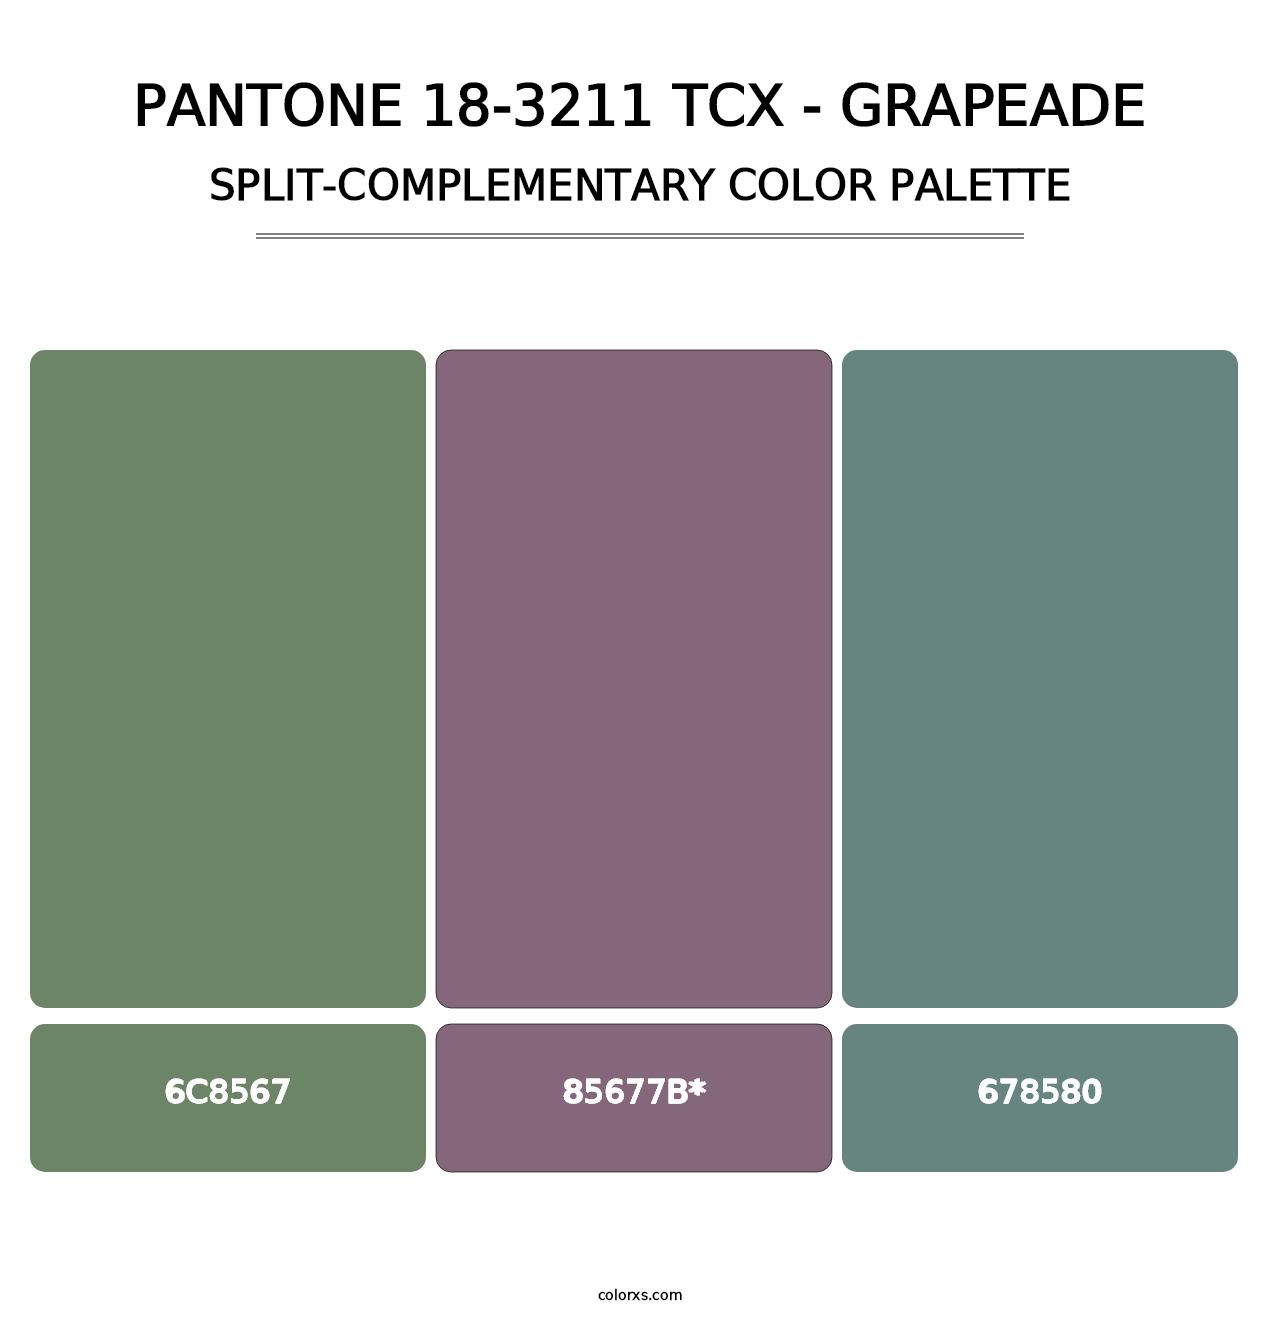 PANTONE 18-3211 TCX - Grapeade - Split-Complementary Color Palette